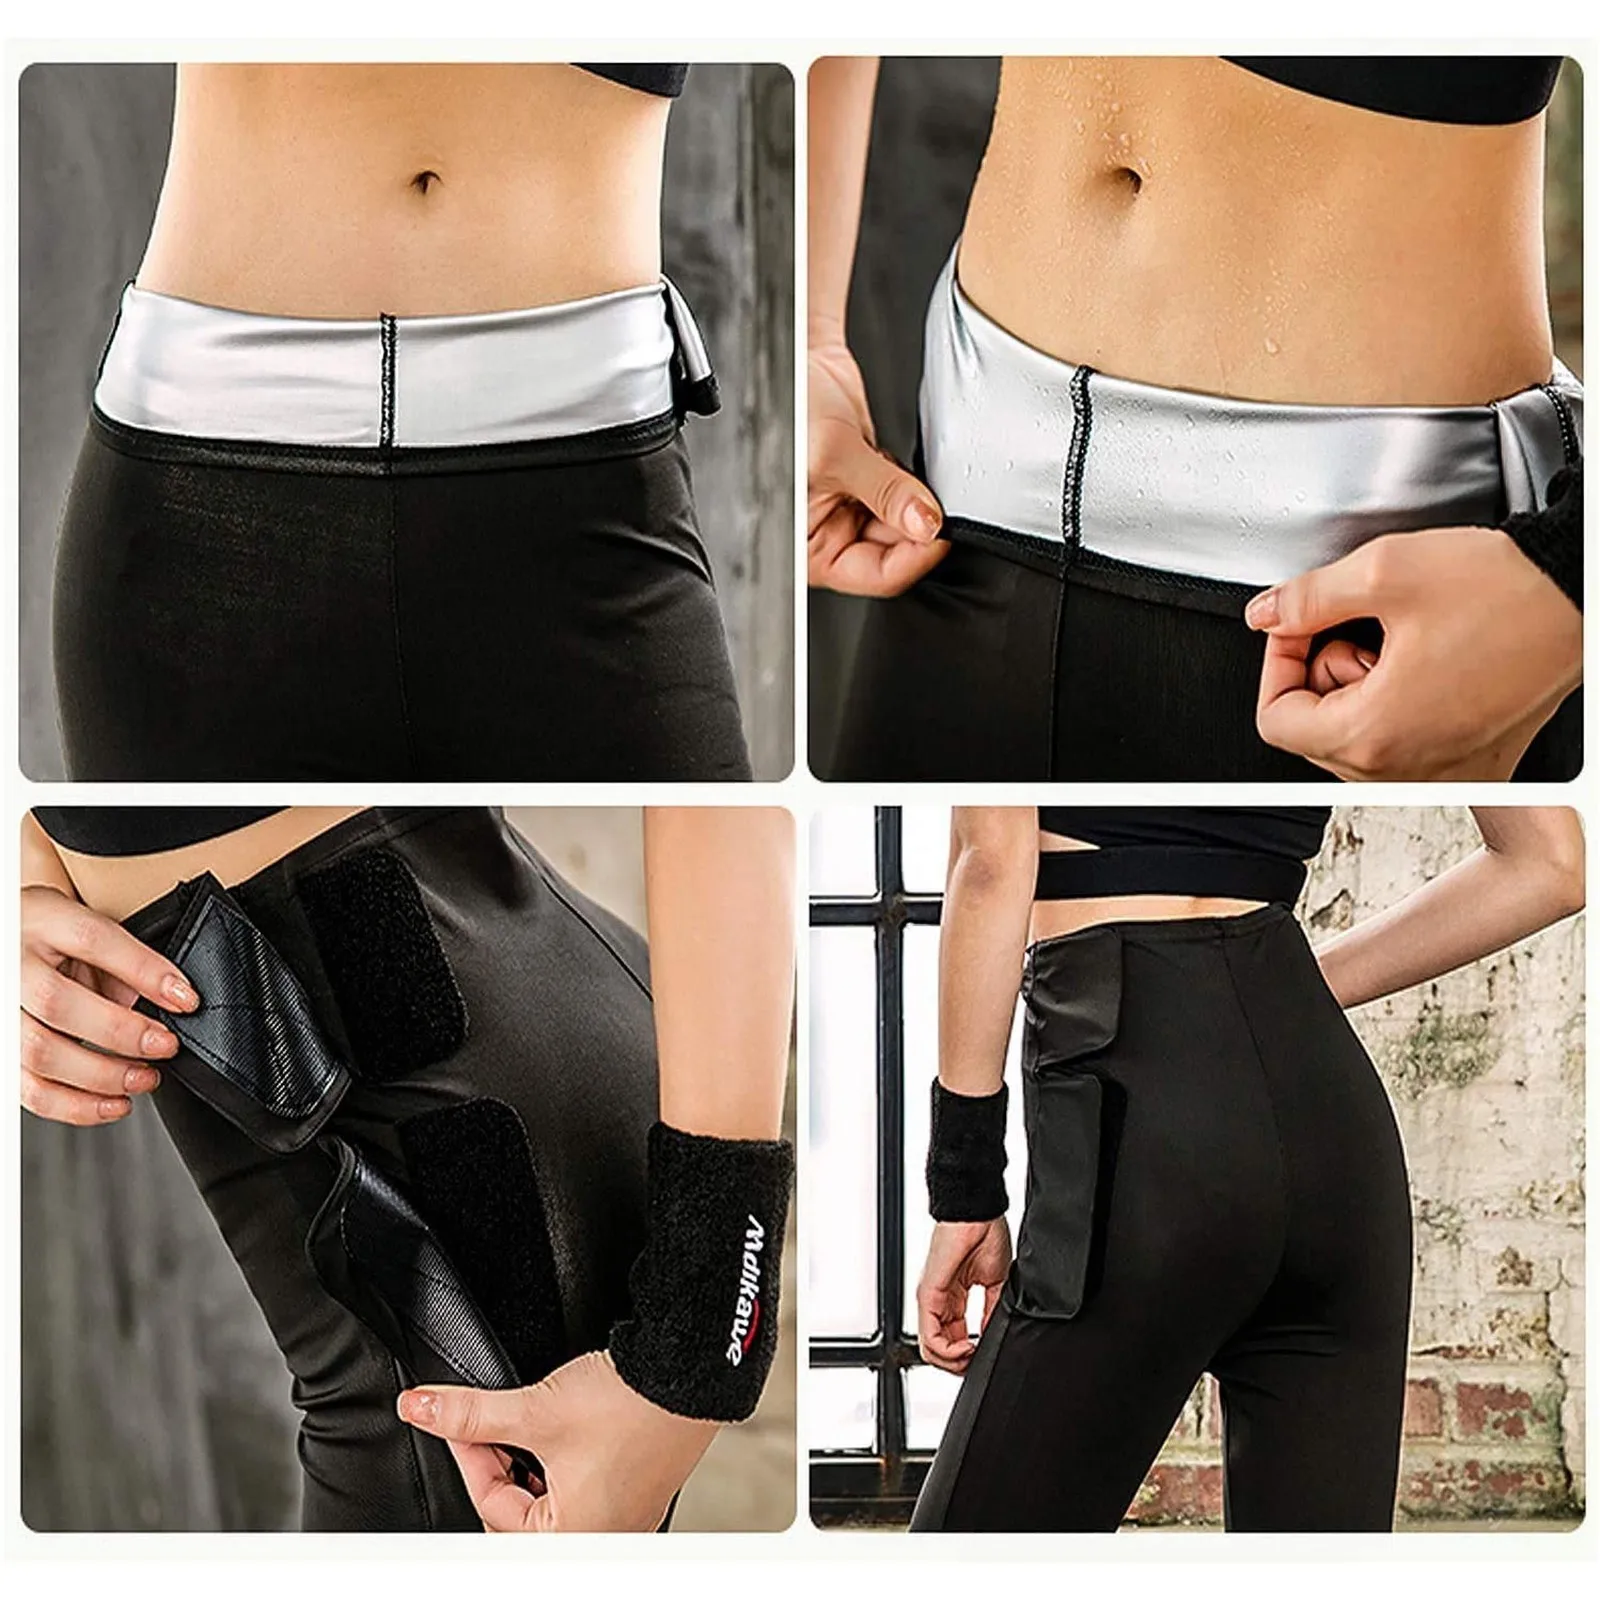 Спортивные штаны для тренировок на талии сауны утягивающие похудения Женский